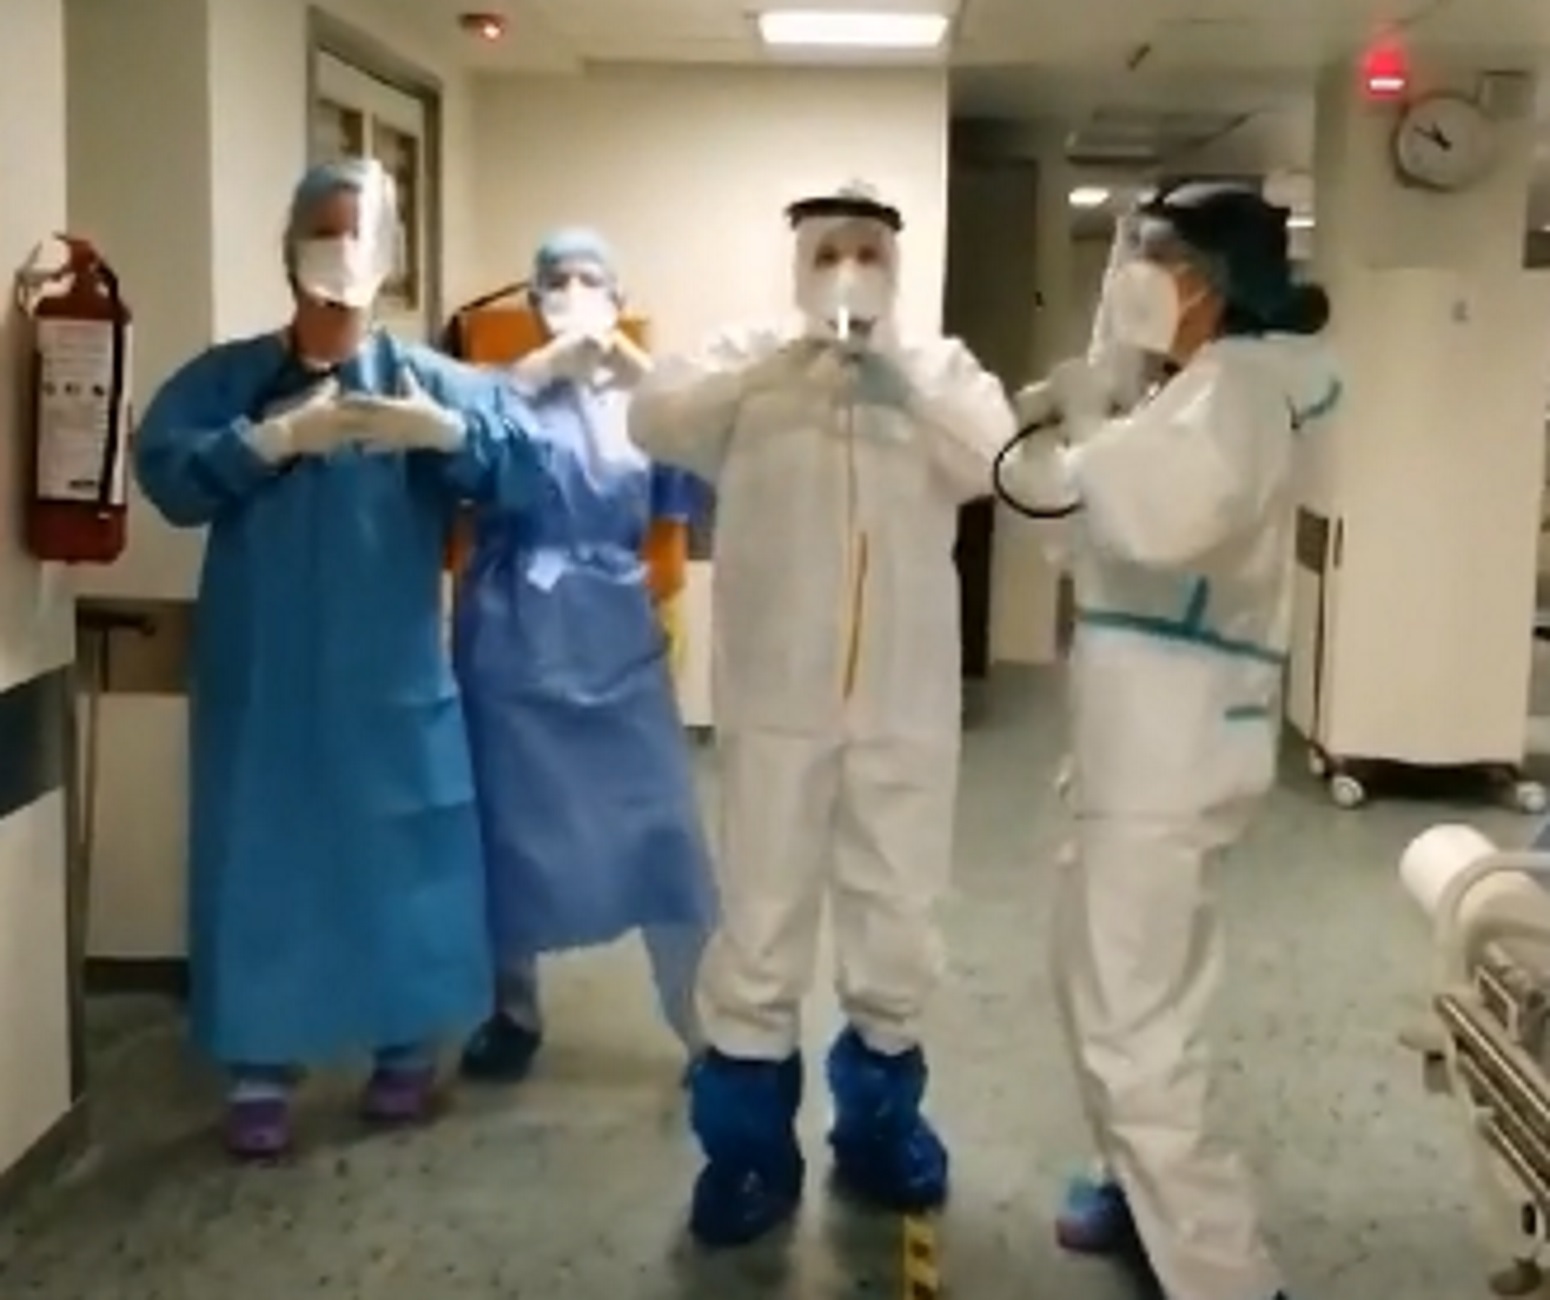 Θεσσαλονίκη: Νοσηλεύτριες χορεύουν σε νοσοκομείο το «χτυπάει η καρδιά μου δυνατά» και γίνονται viral